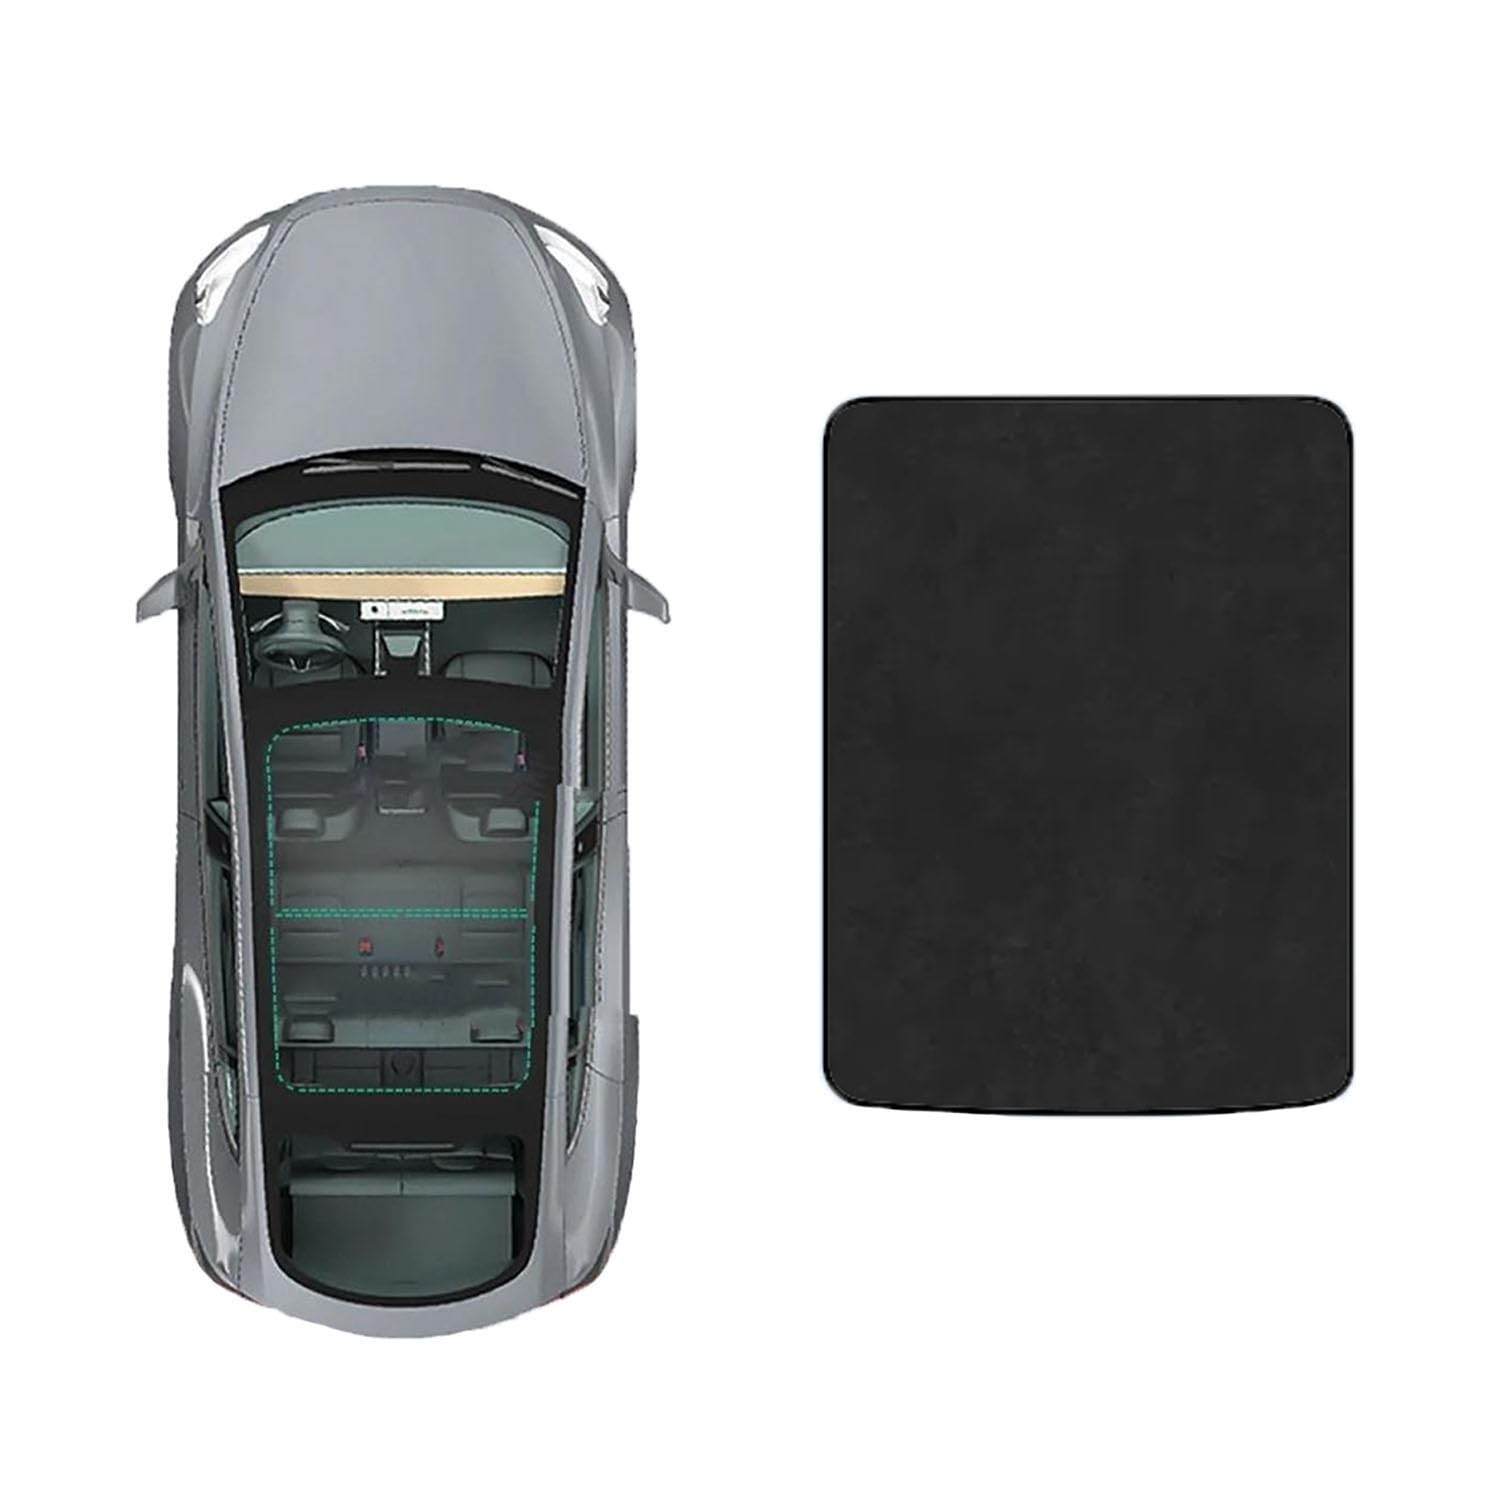 Auto-Schiebedach-Beschattung Für Peugeot 308s 2015-,Auto Schiebedach Sonnenschutz Dachfenster Dach Wärme Isolierung Beschattung Innen,D-Black Suede von LiuROSE